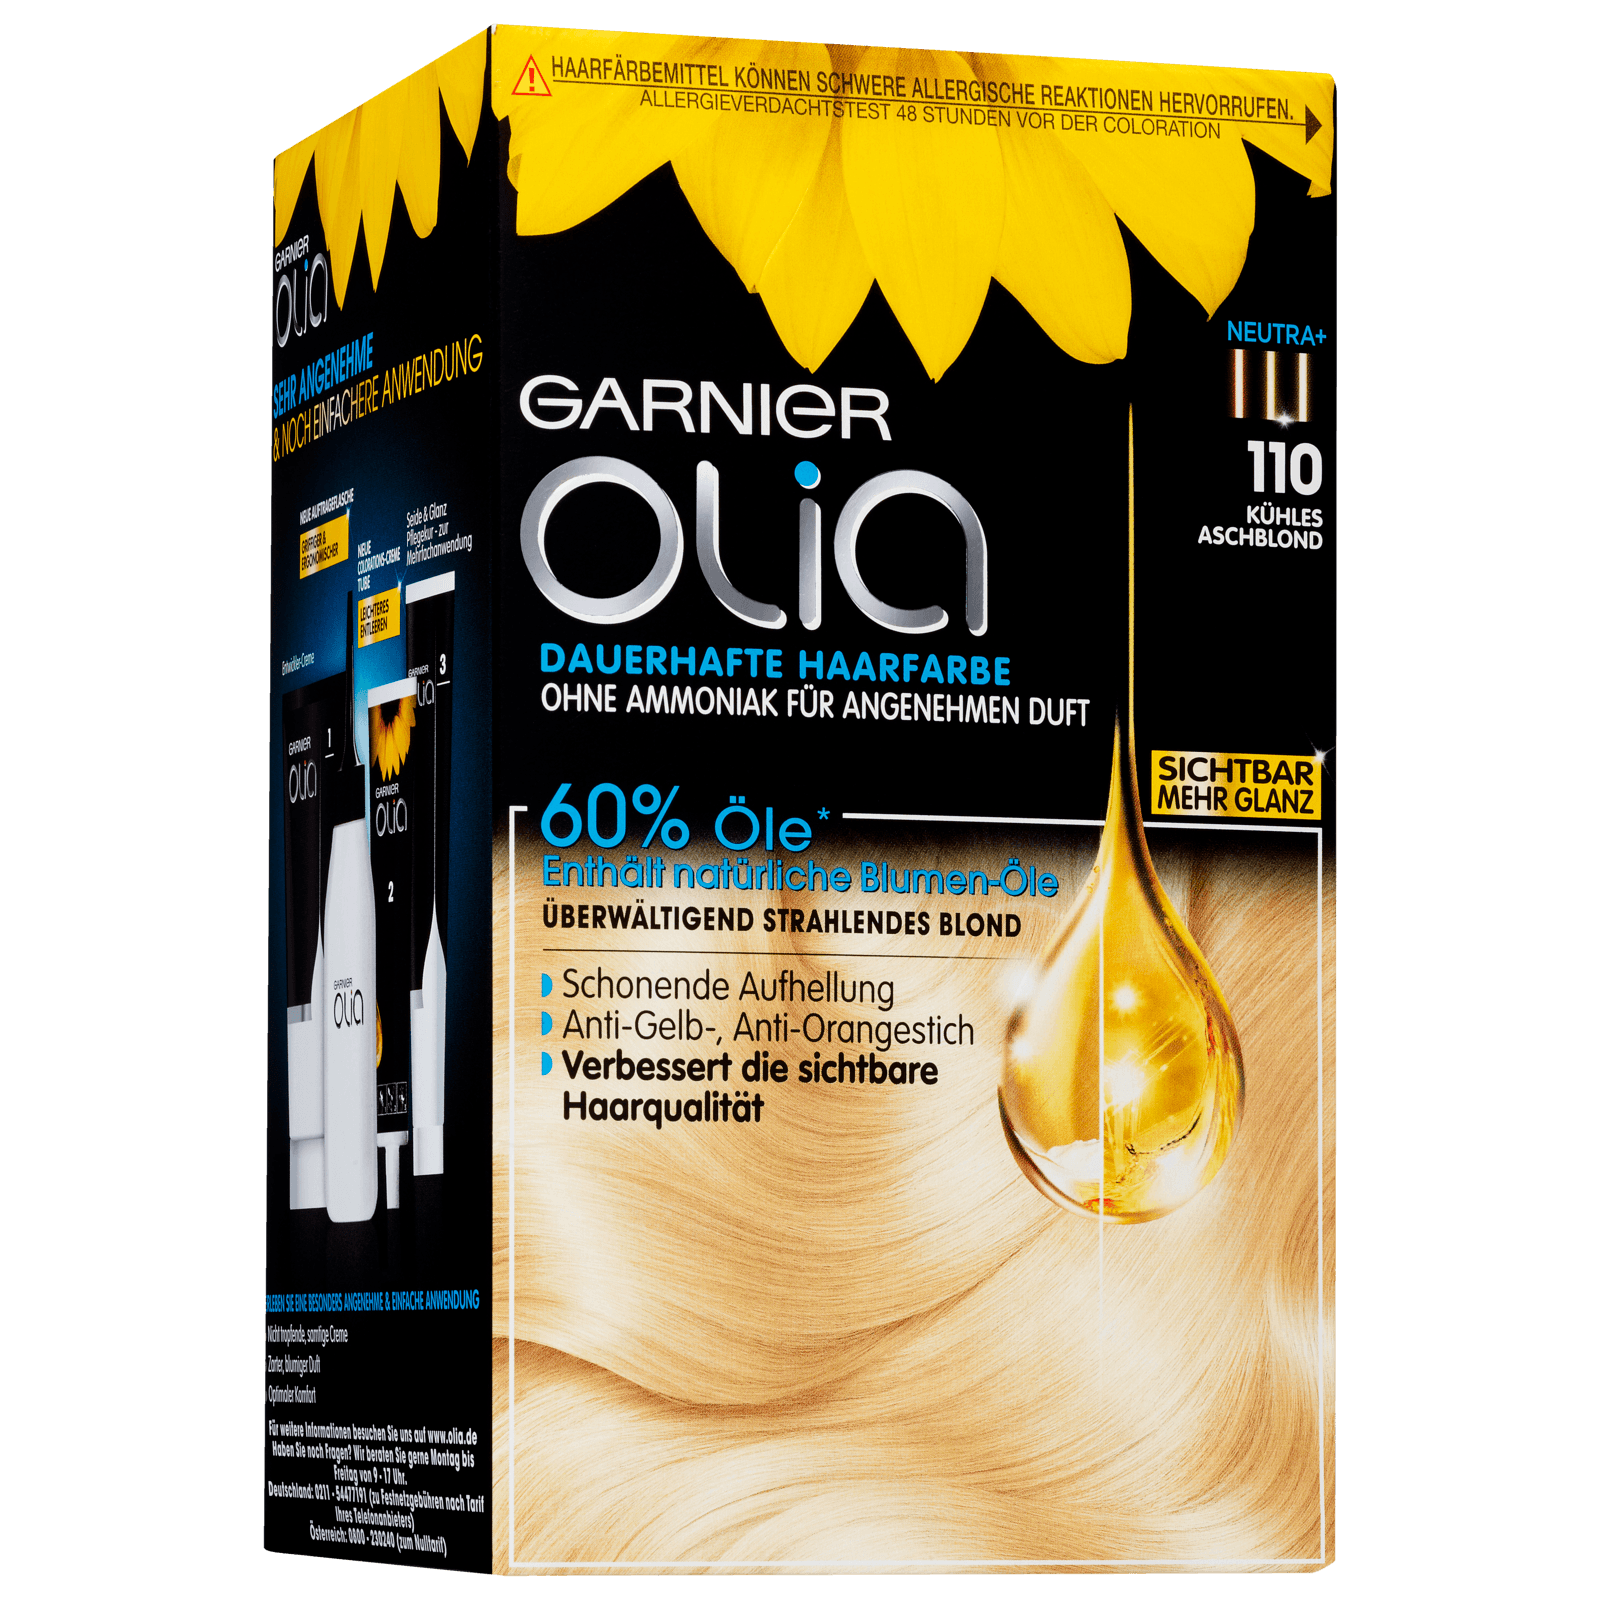 Garnier Olia Dauerhafte Haarfarbe 110 kühles aschblond bei REWE online  bestellen!